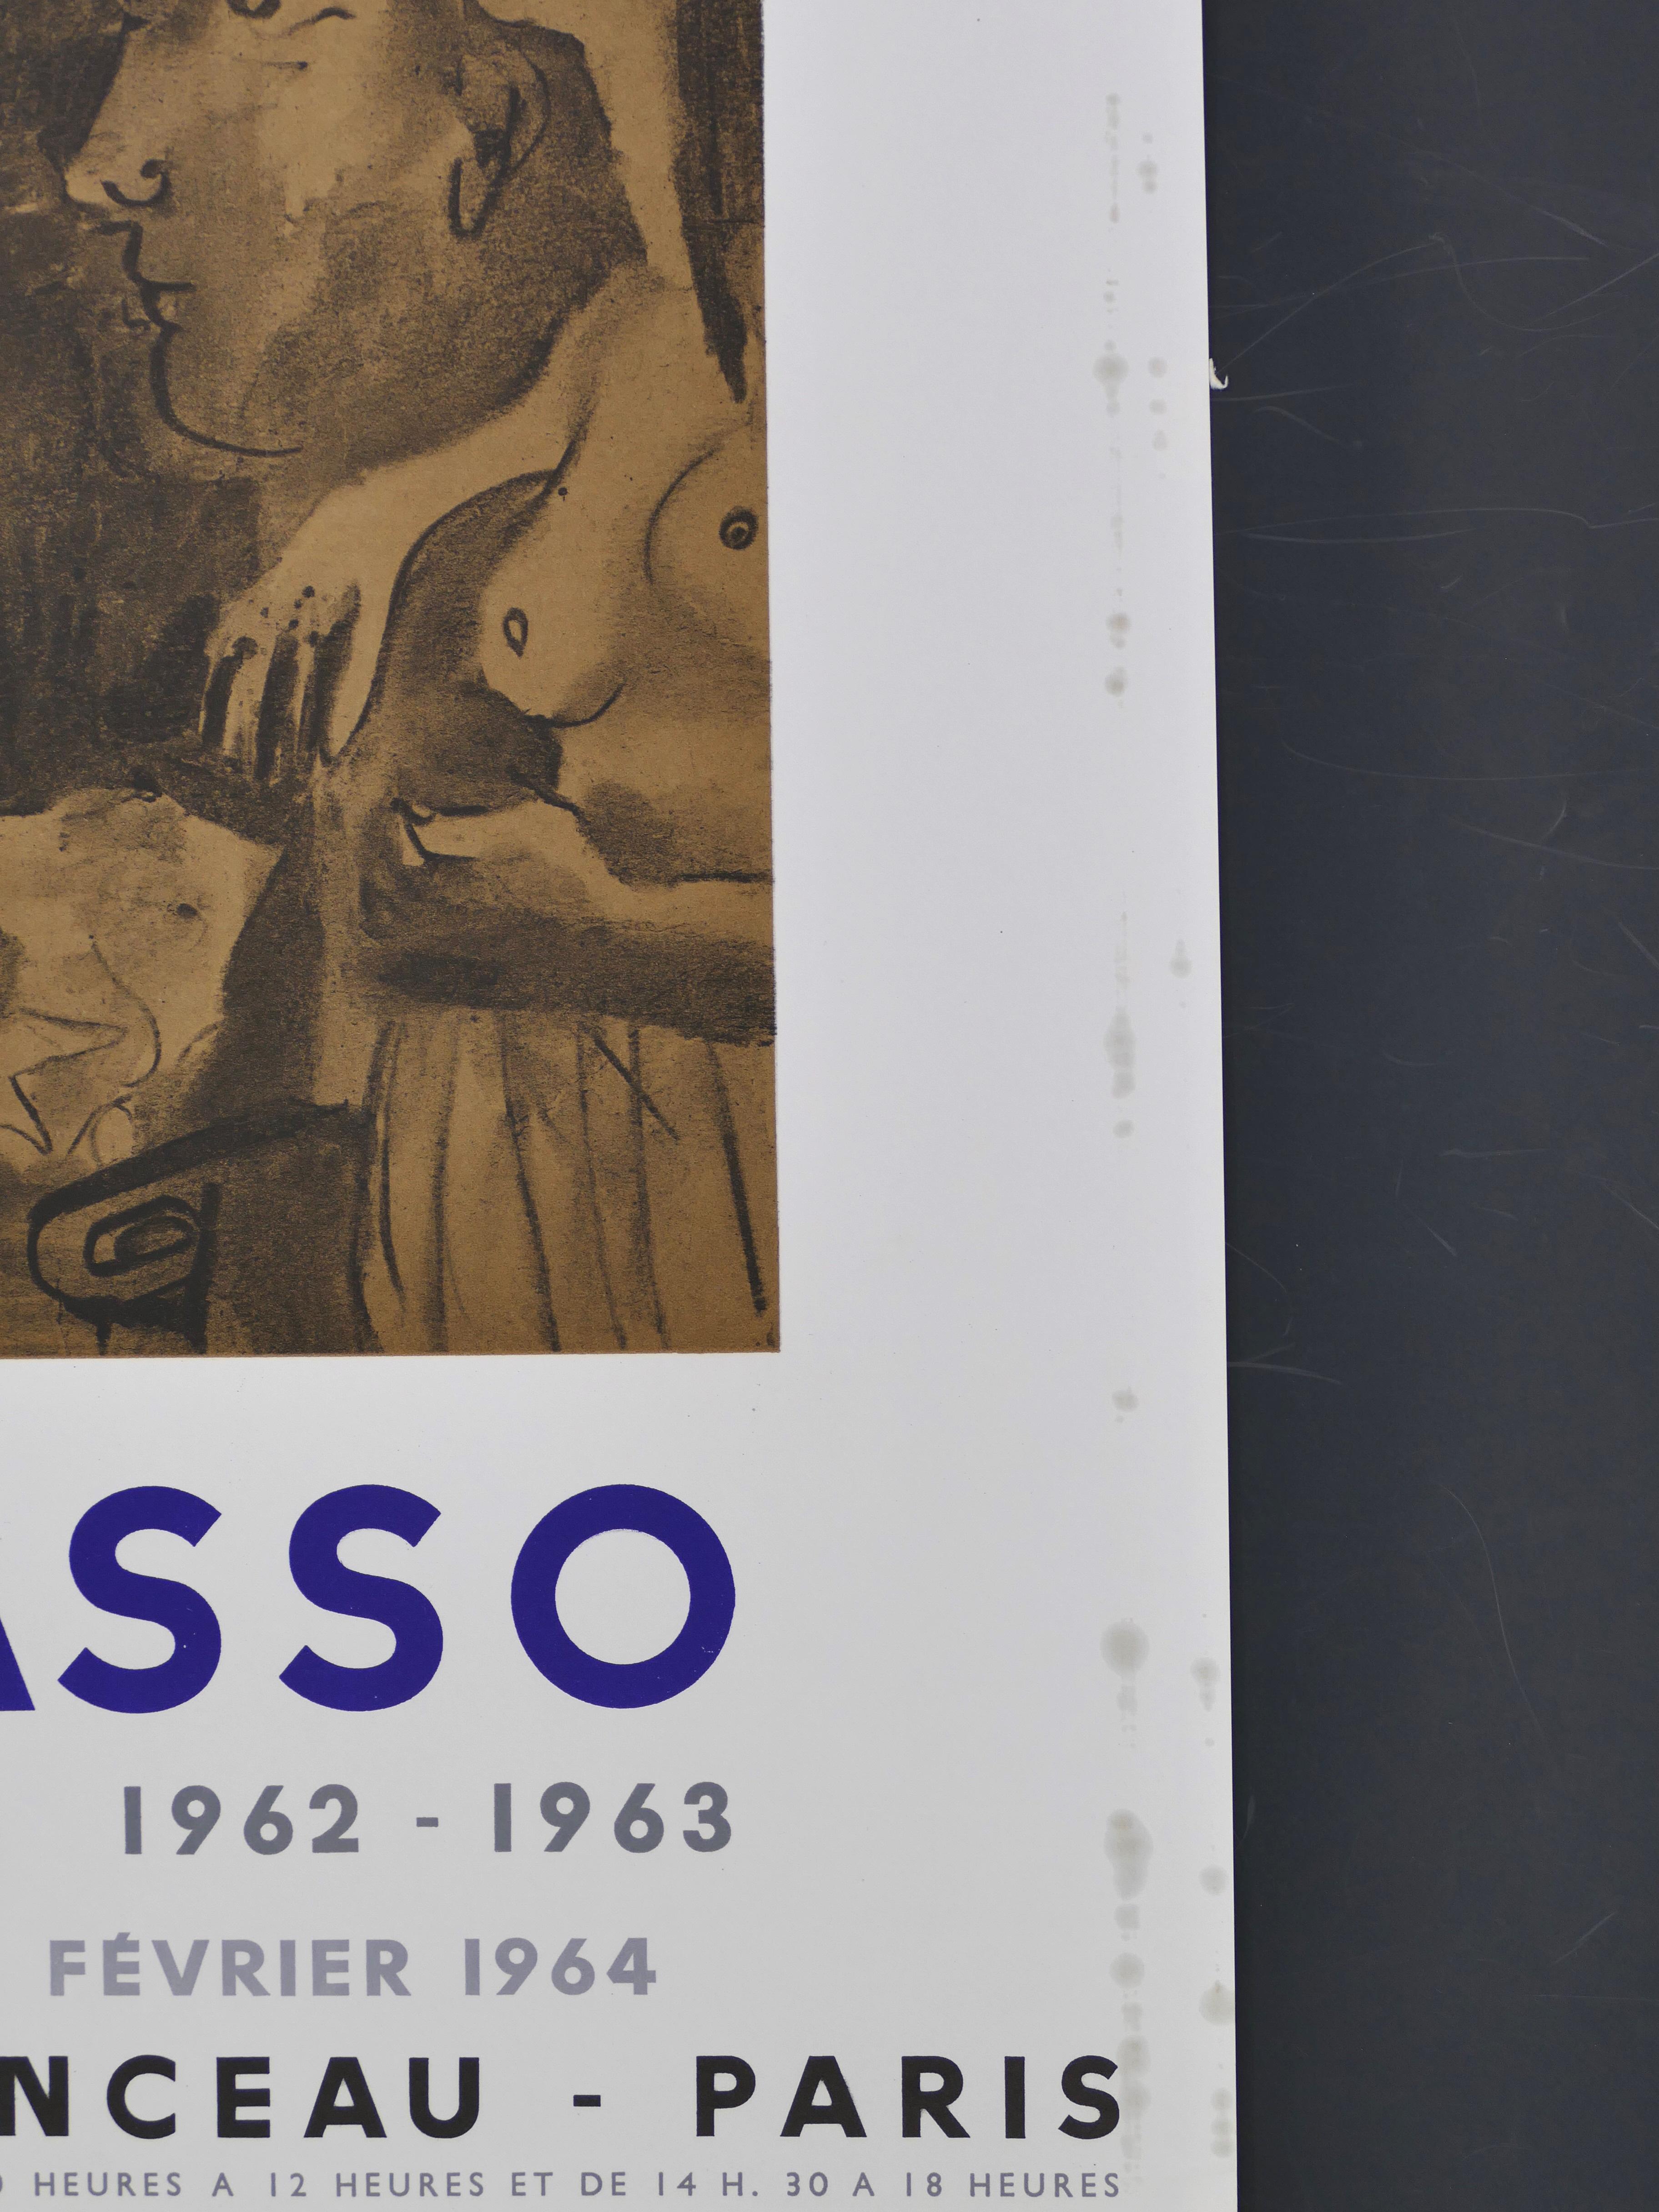 Affiche d'exposition vintage d'après Picasso à Paris - 1964 - Cubisme Print par (after) Pablo Picasso